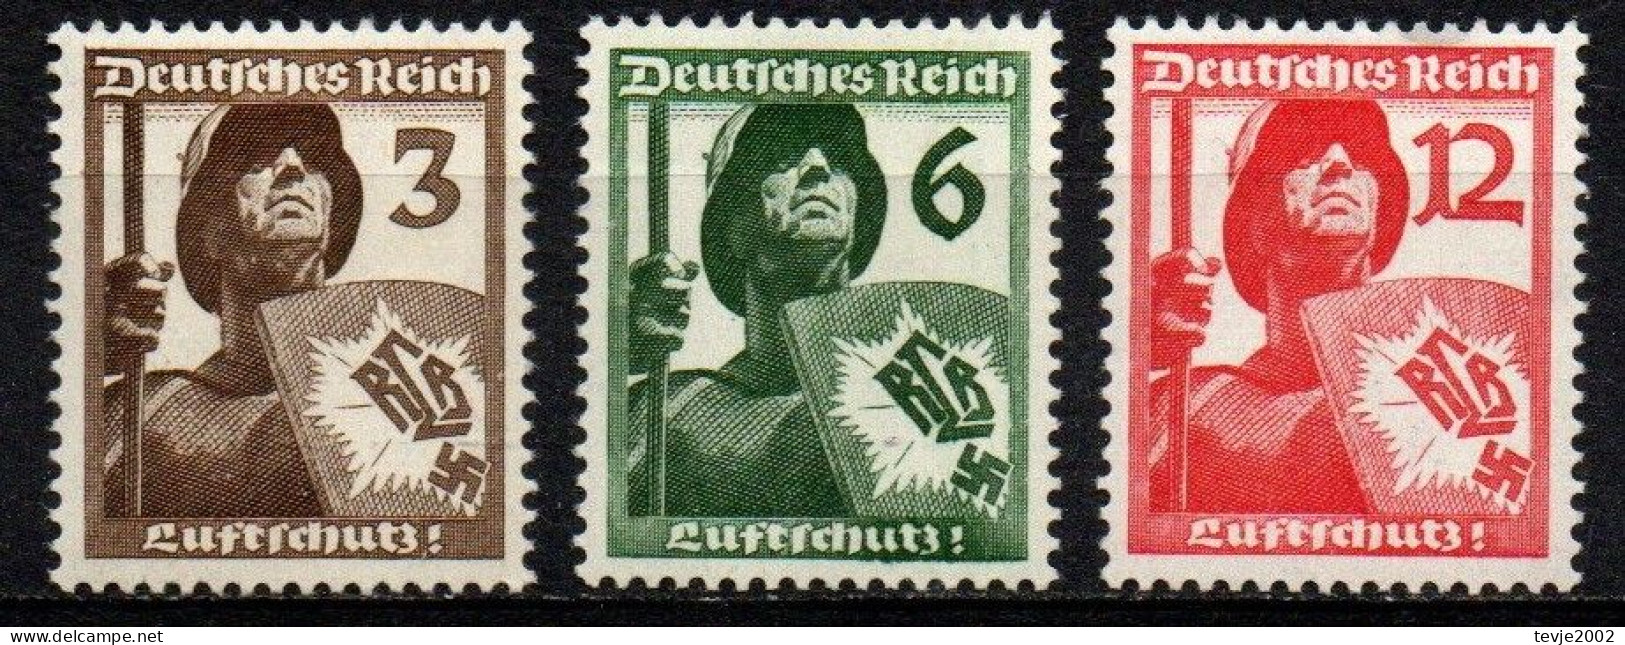 Deutsches Reich 1937 - Mi.Nr. 643 - 645 - Postfrisch MNH - Nuevos